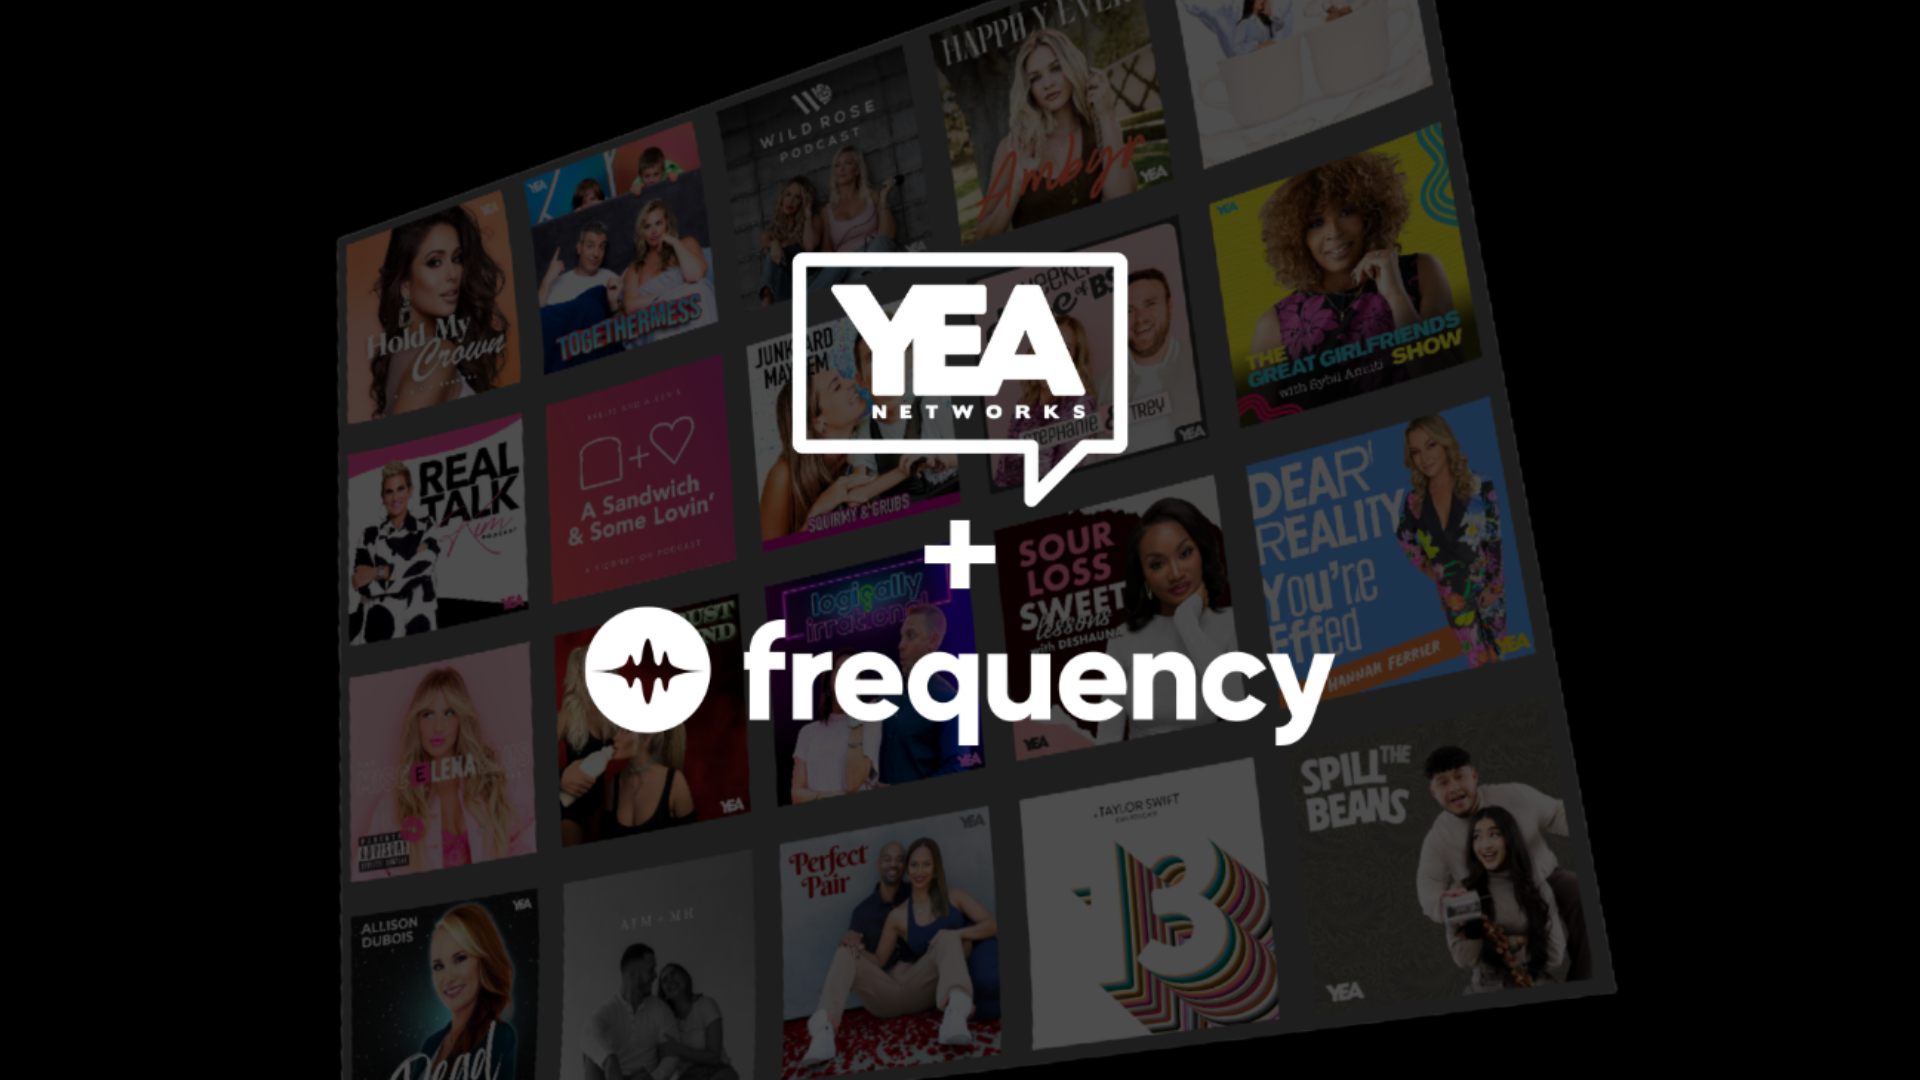 米メディア企業YEA NetworksがFrequencyとのパートナシップを発表。ポッドキャストネットワークの拡大に備えて